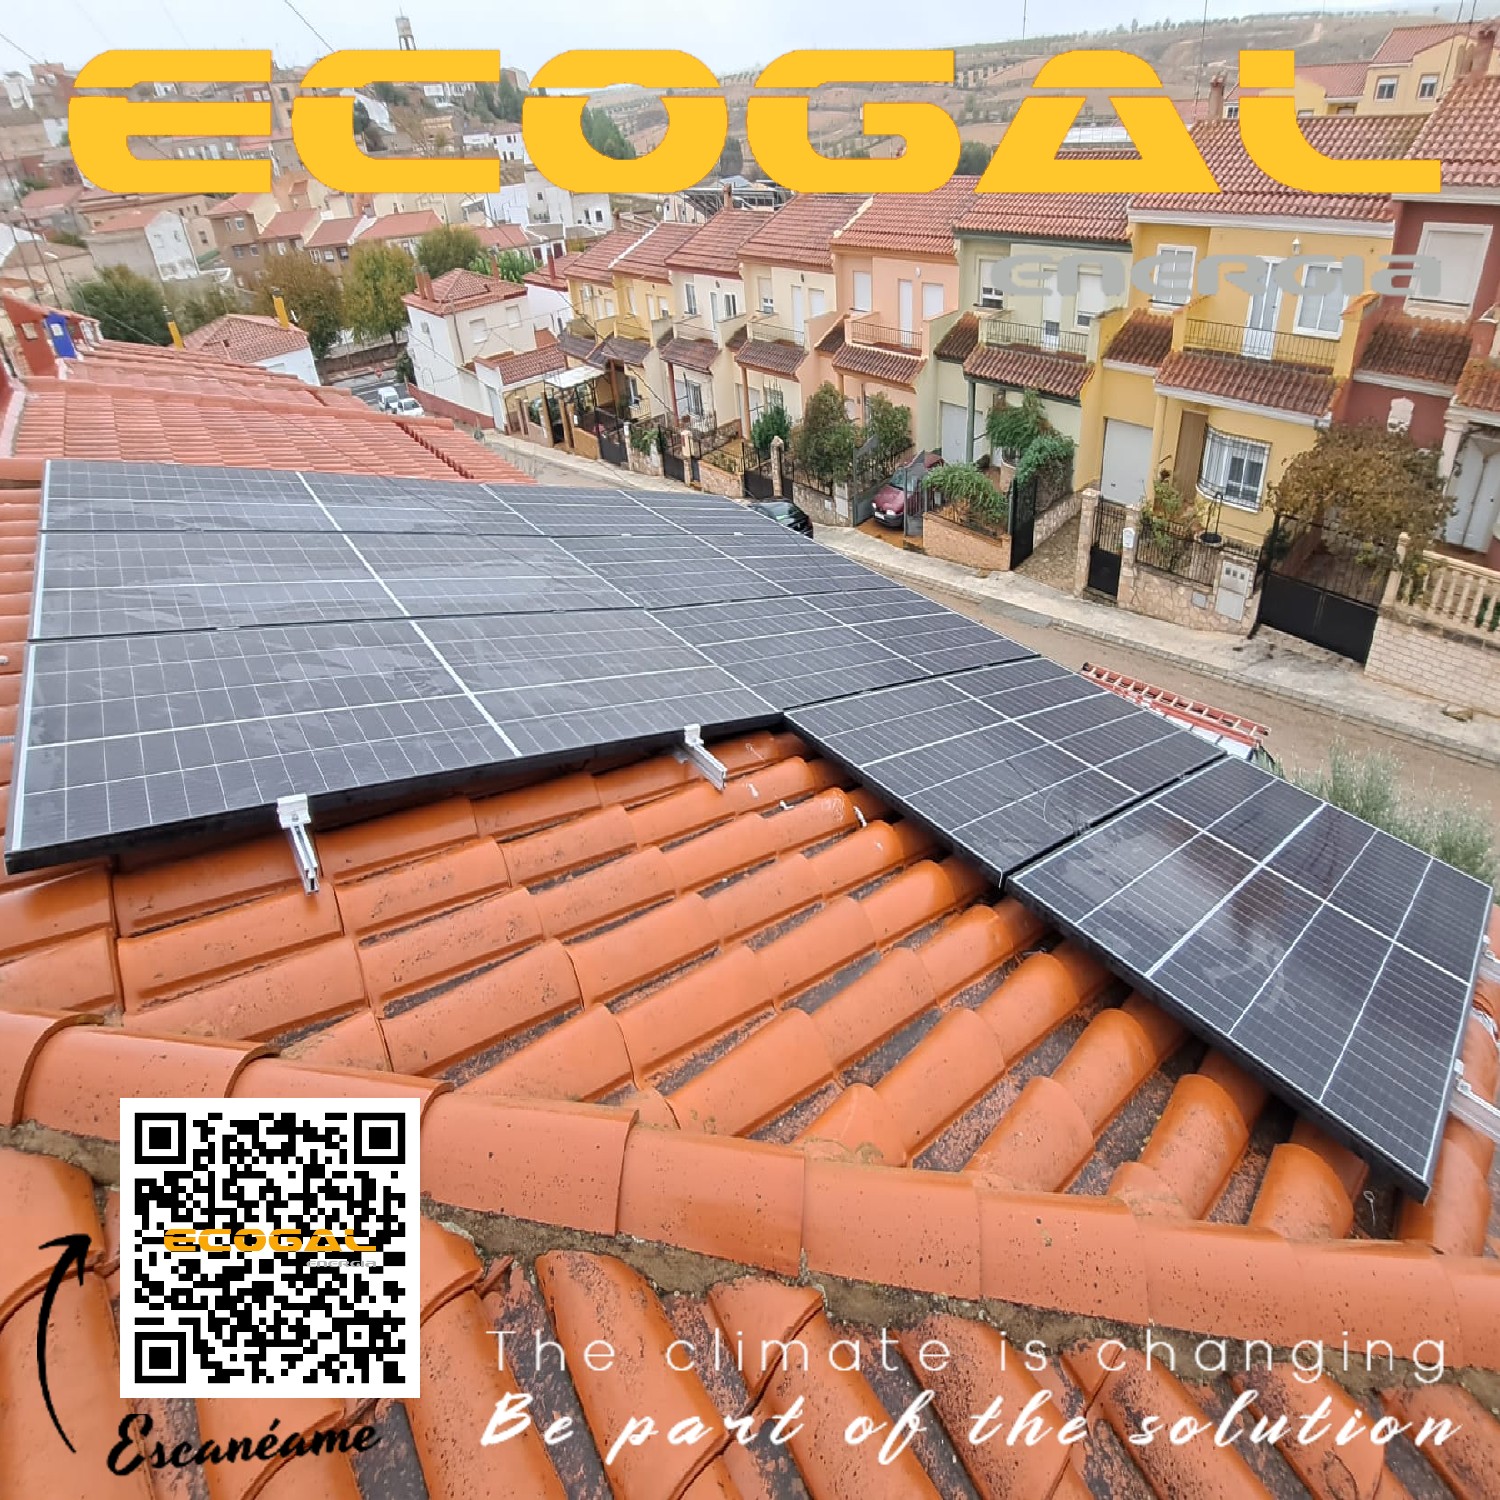 Instalación de autoconsumo solar de 4 Kwp en Munera (Albacete). - Ecogal  Energia